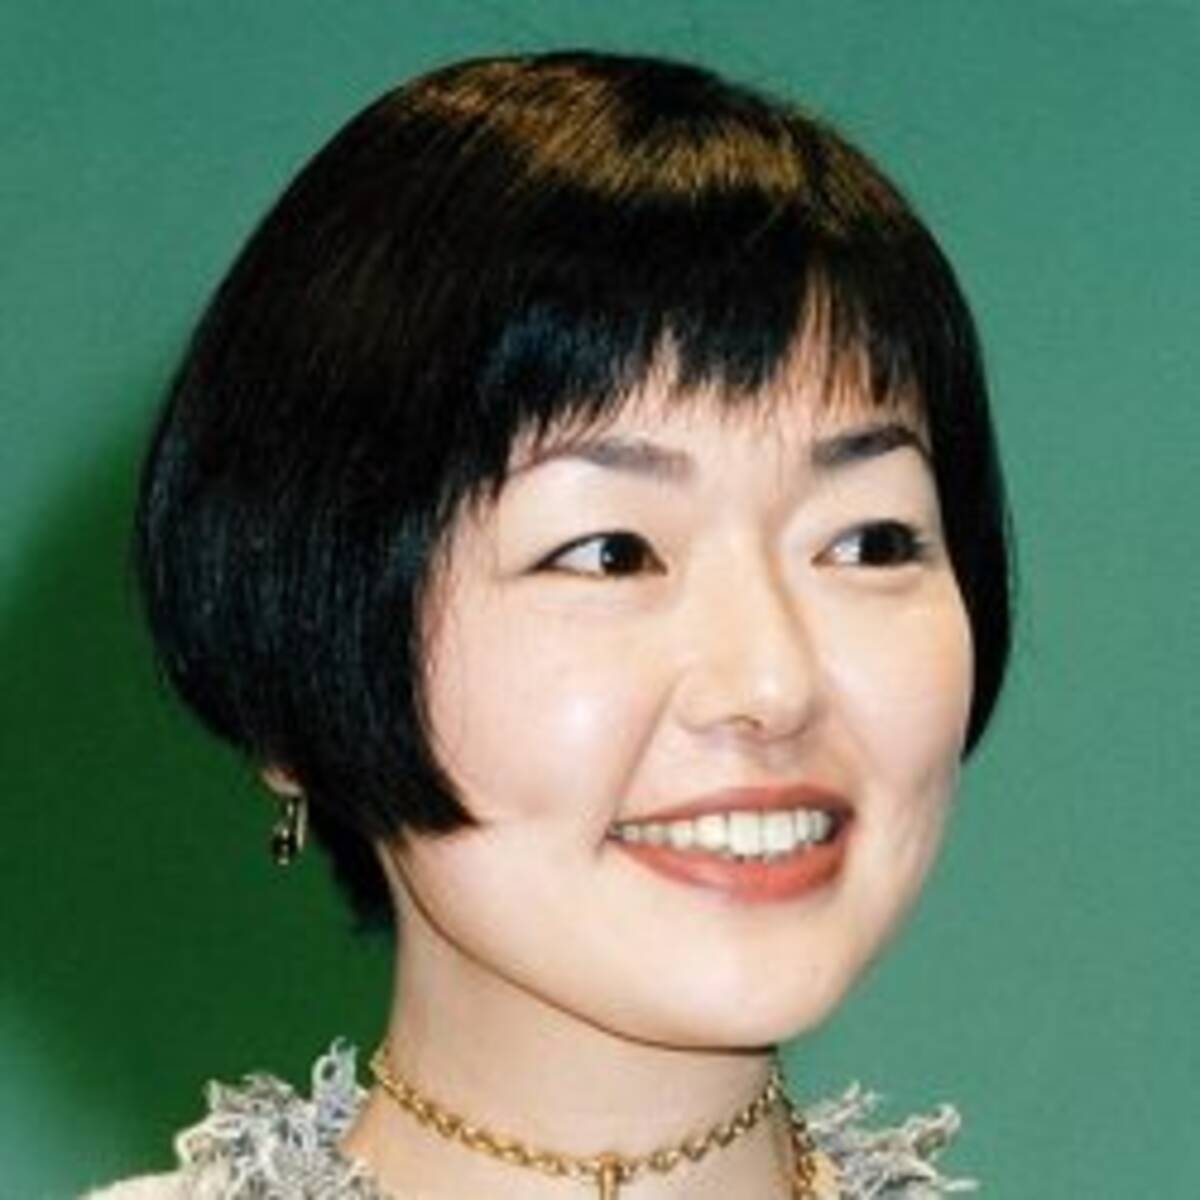 小林聡美 離婚後初のデート報道 相手男性の 特徴 に好感度上昇 19年5月28日 エキサイトニュース